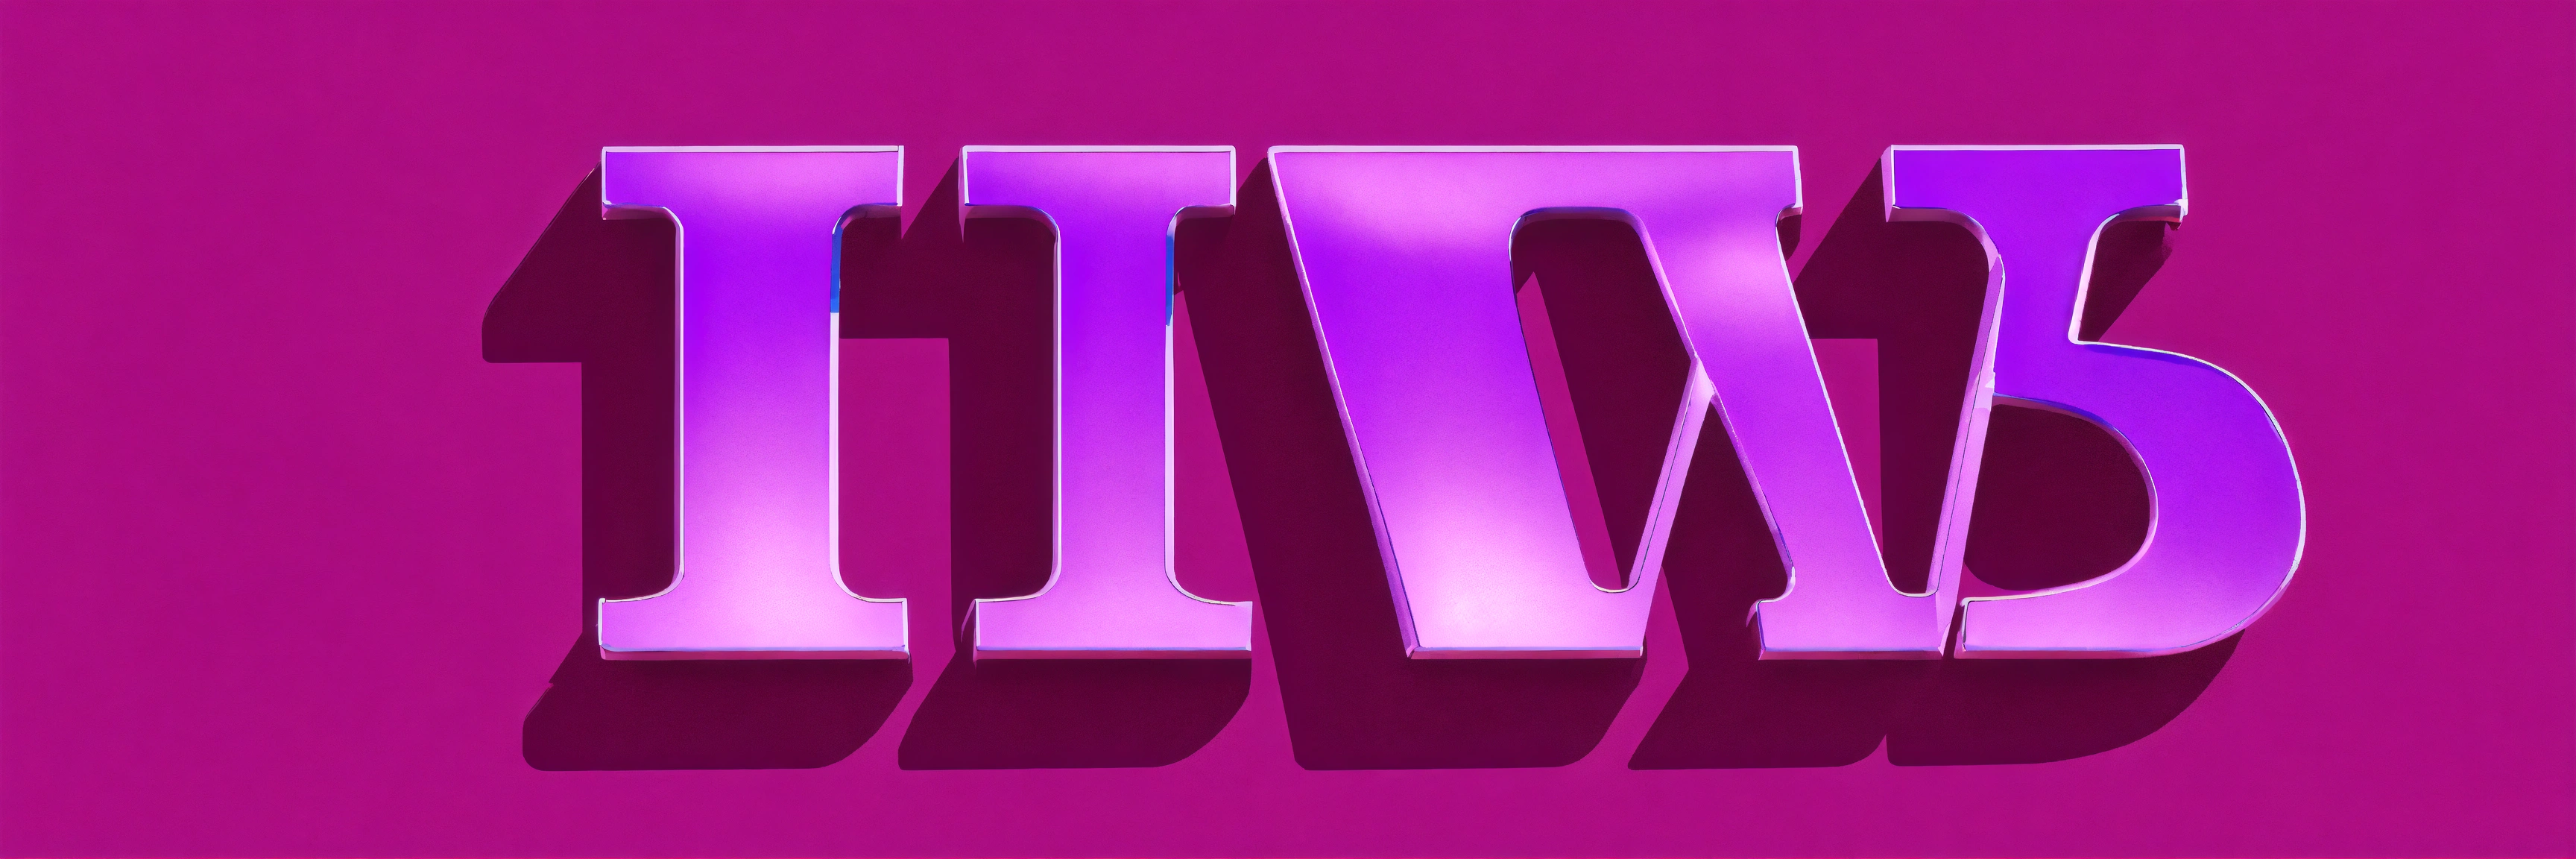 Lexica Luvender Color L U V 3 Letters Logo Icon Web 3d Purple Fuxia Or Lavander Color